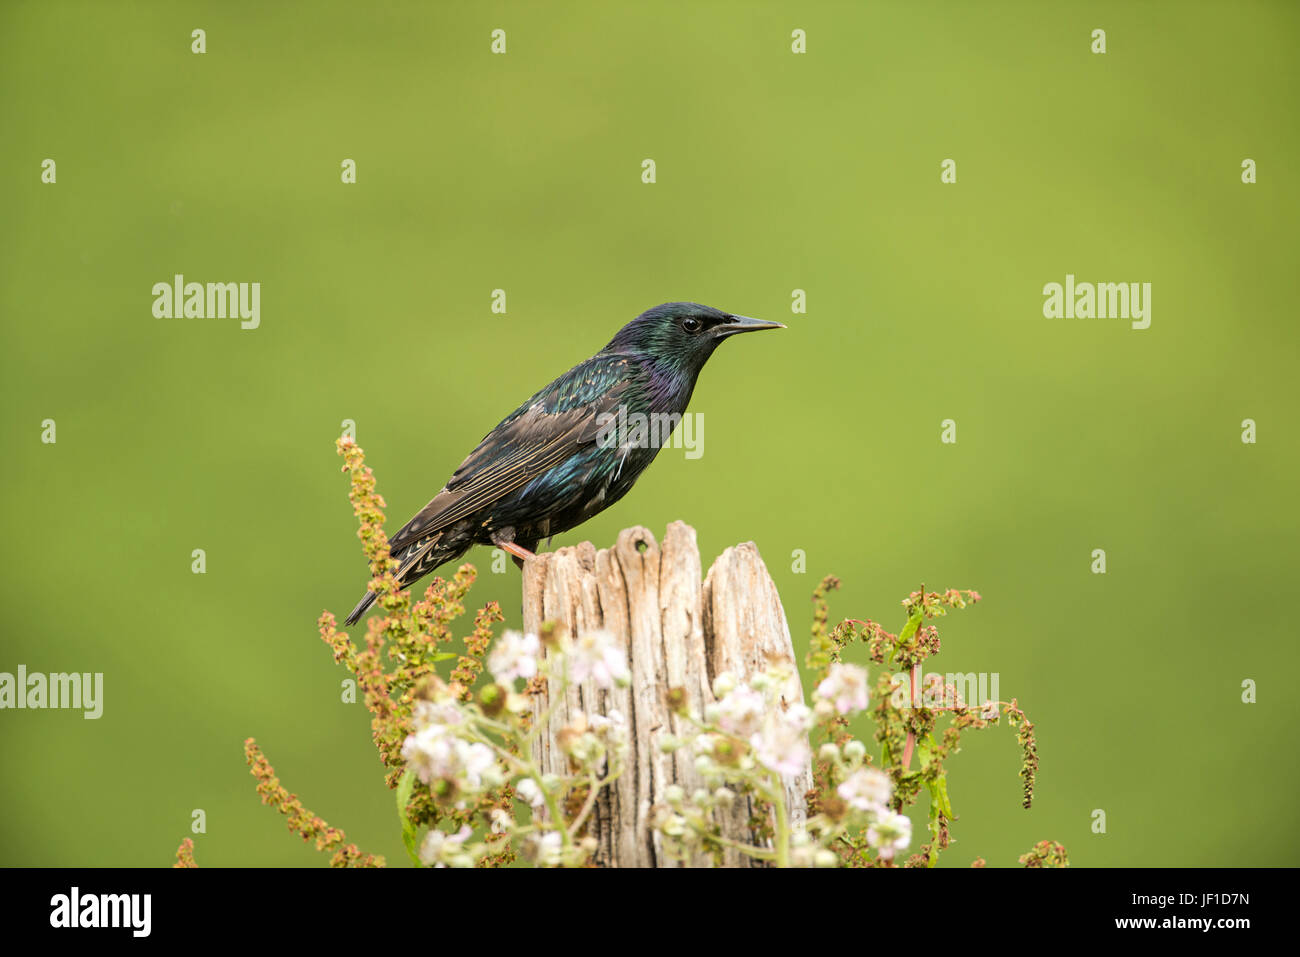 Starling comune (Sturnus vulgaris) fotografato su un vecchio posto di legno, fine stagione di riproduzione Foto Stock